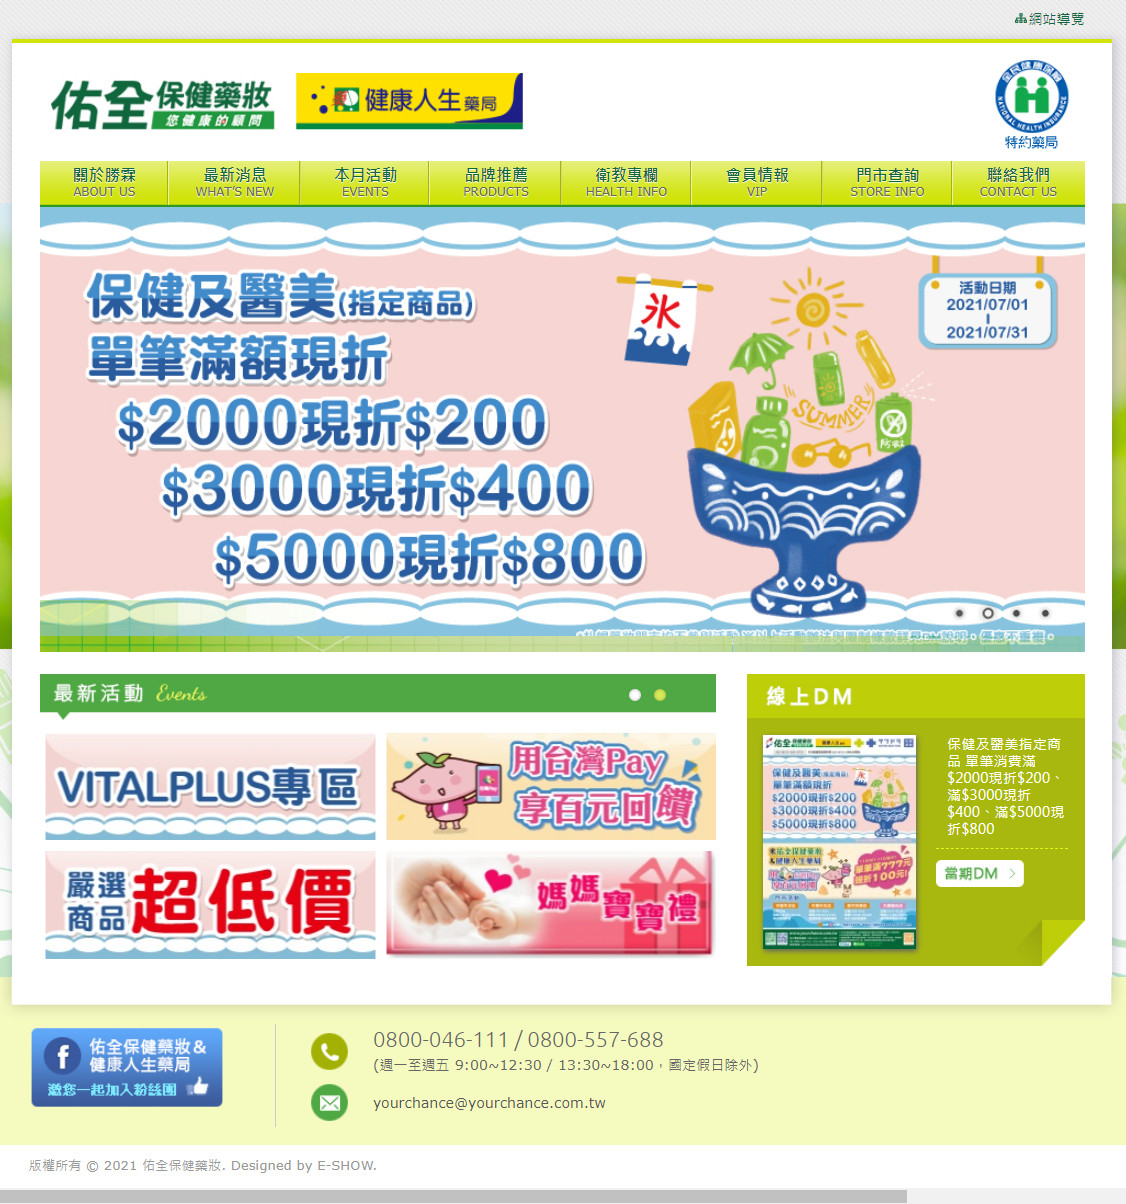 勝霖藥品股份有限公司 藥局網站設計
網站設計